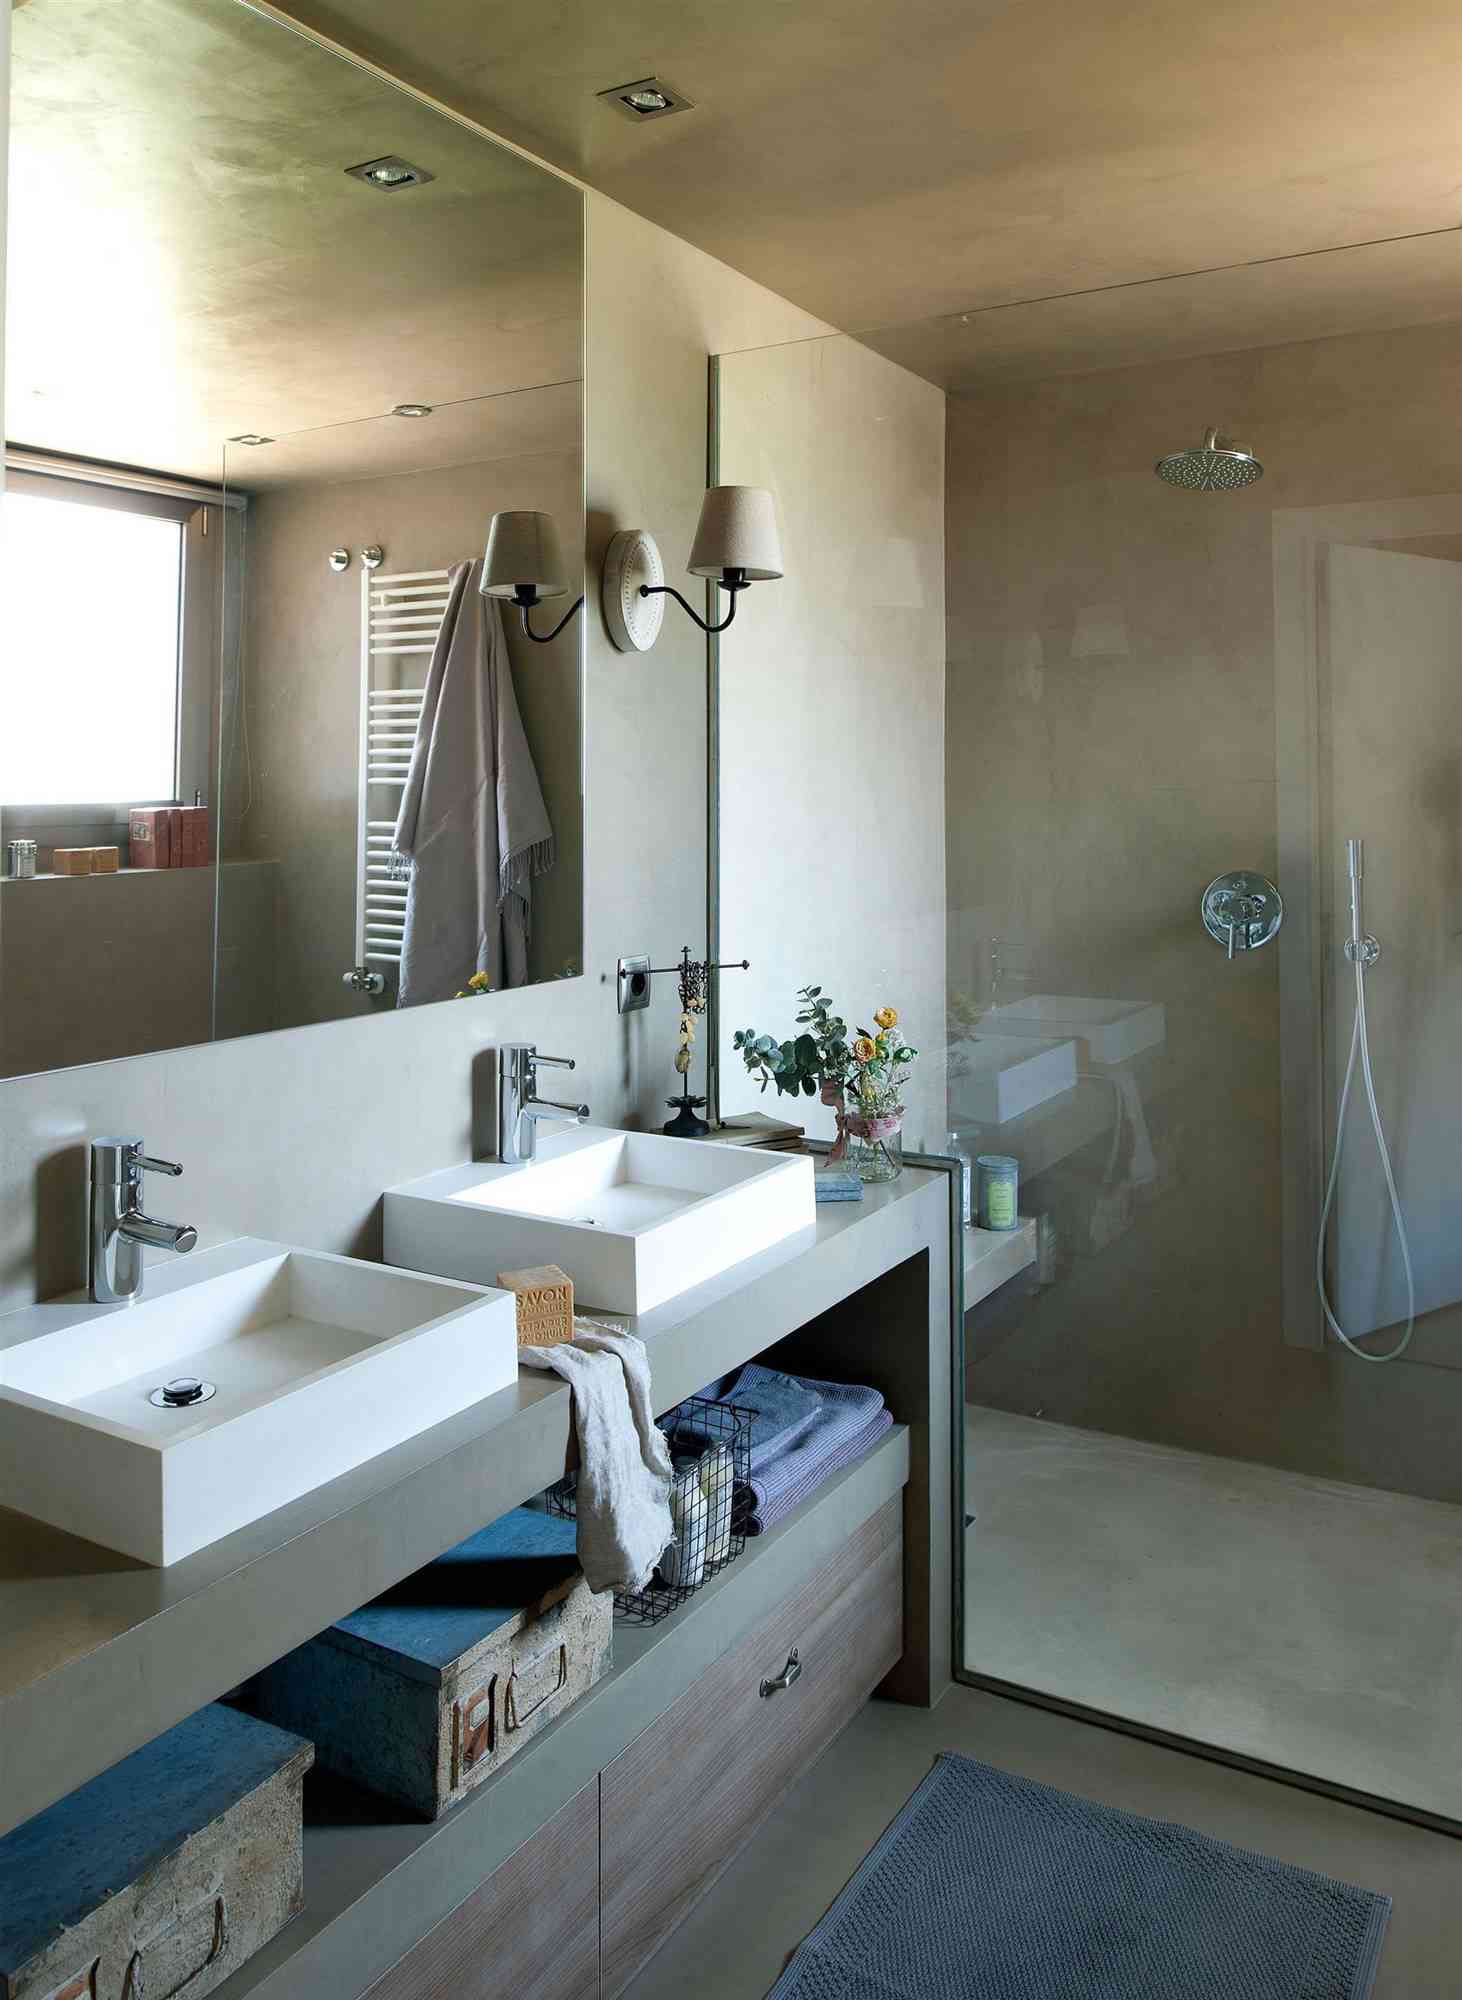 9 bano con ducha revestida de microcemento y lavabo doble fontaneros madrid reparaciones urgentes madrid